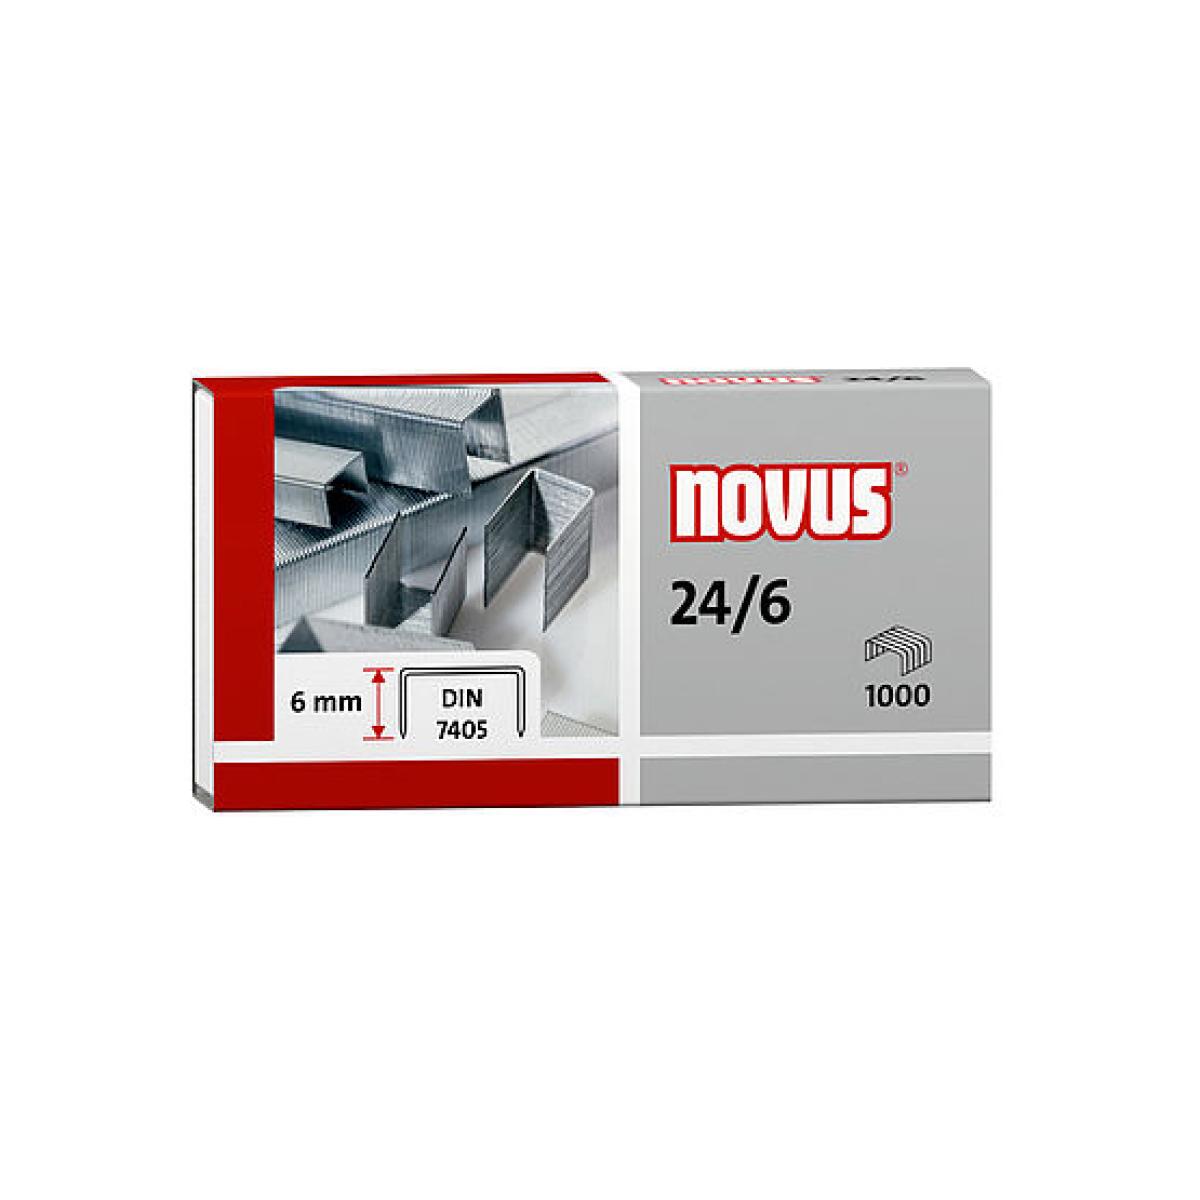 Novus  24/6 super staples - Pack of 1000